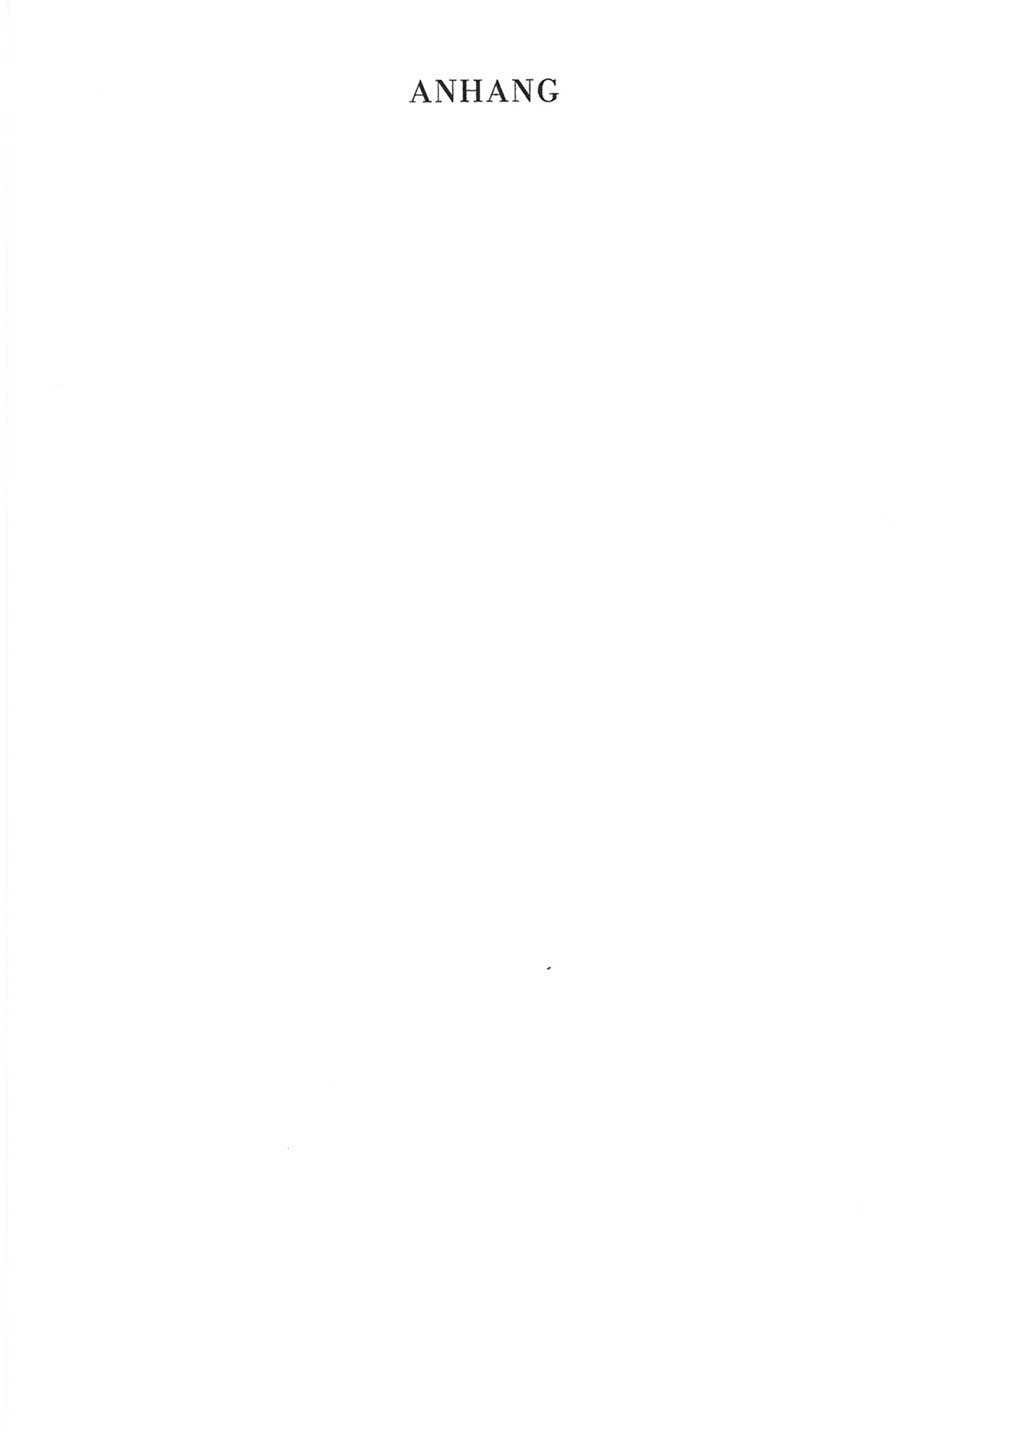 Protokoll der Verhandlungen des Ⅹ. Parteitages der Sozialistischen Einheitspartei Deutschlands (SED) [Deutsche Demokratische Republik (DDR)] 1981, Band 2, Seite 213 (Prot. Verh. Ⅹ. PT SED DDR 1981, Bd. 2, S. 213)